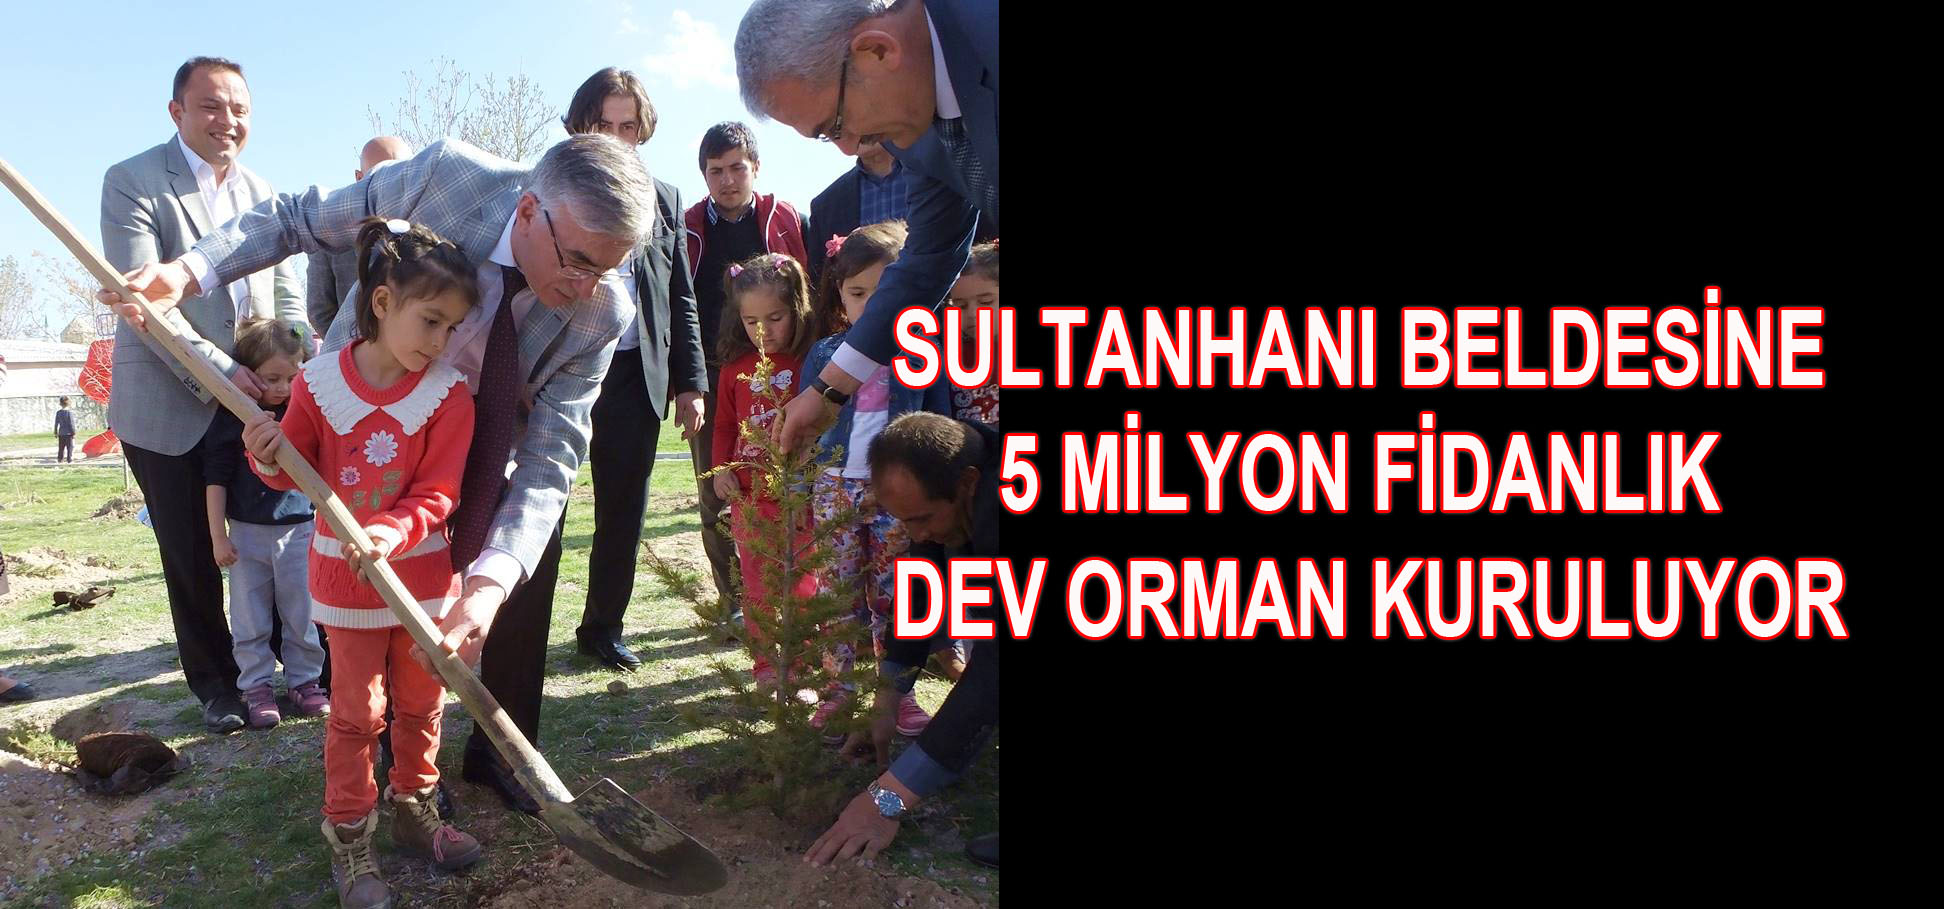 Sultanhanı Beldesine 5 Milyon Fidanlık Dev Orman Kuruluyor